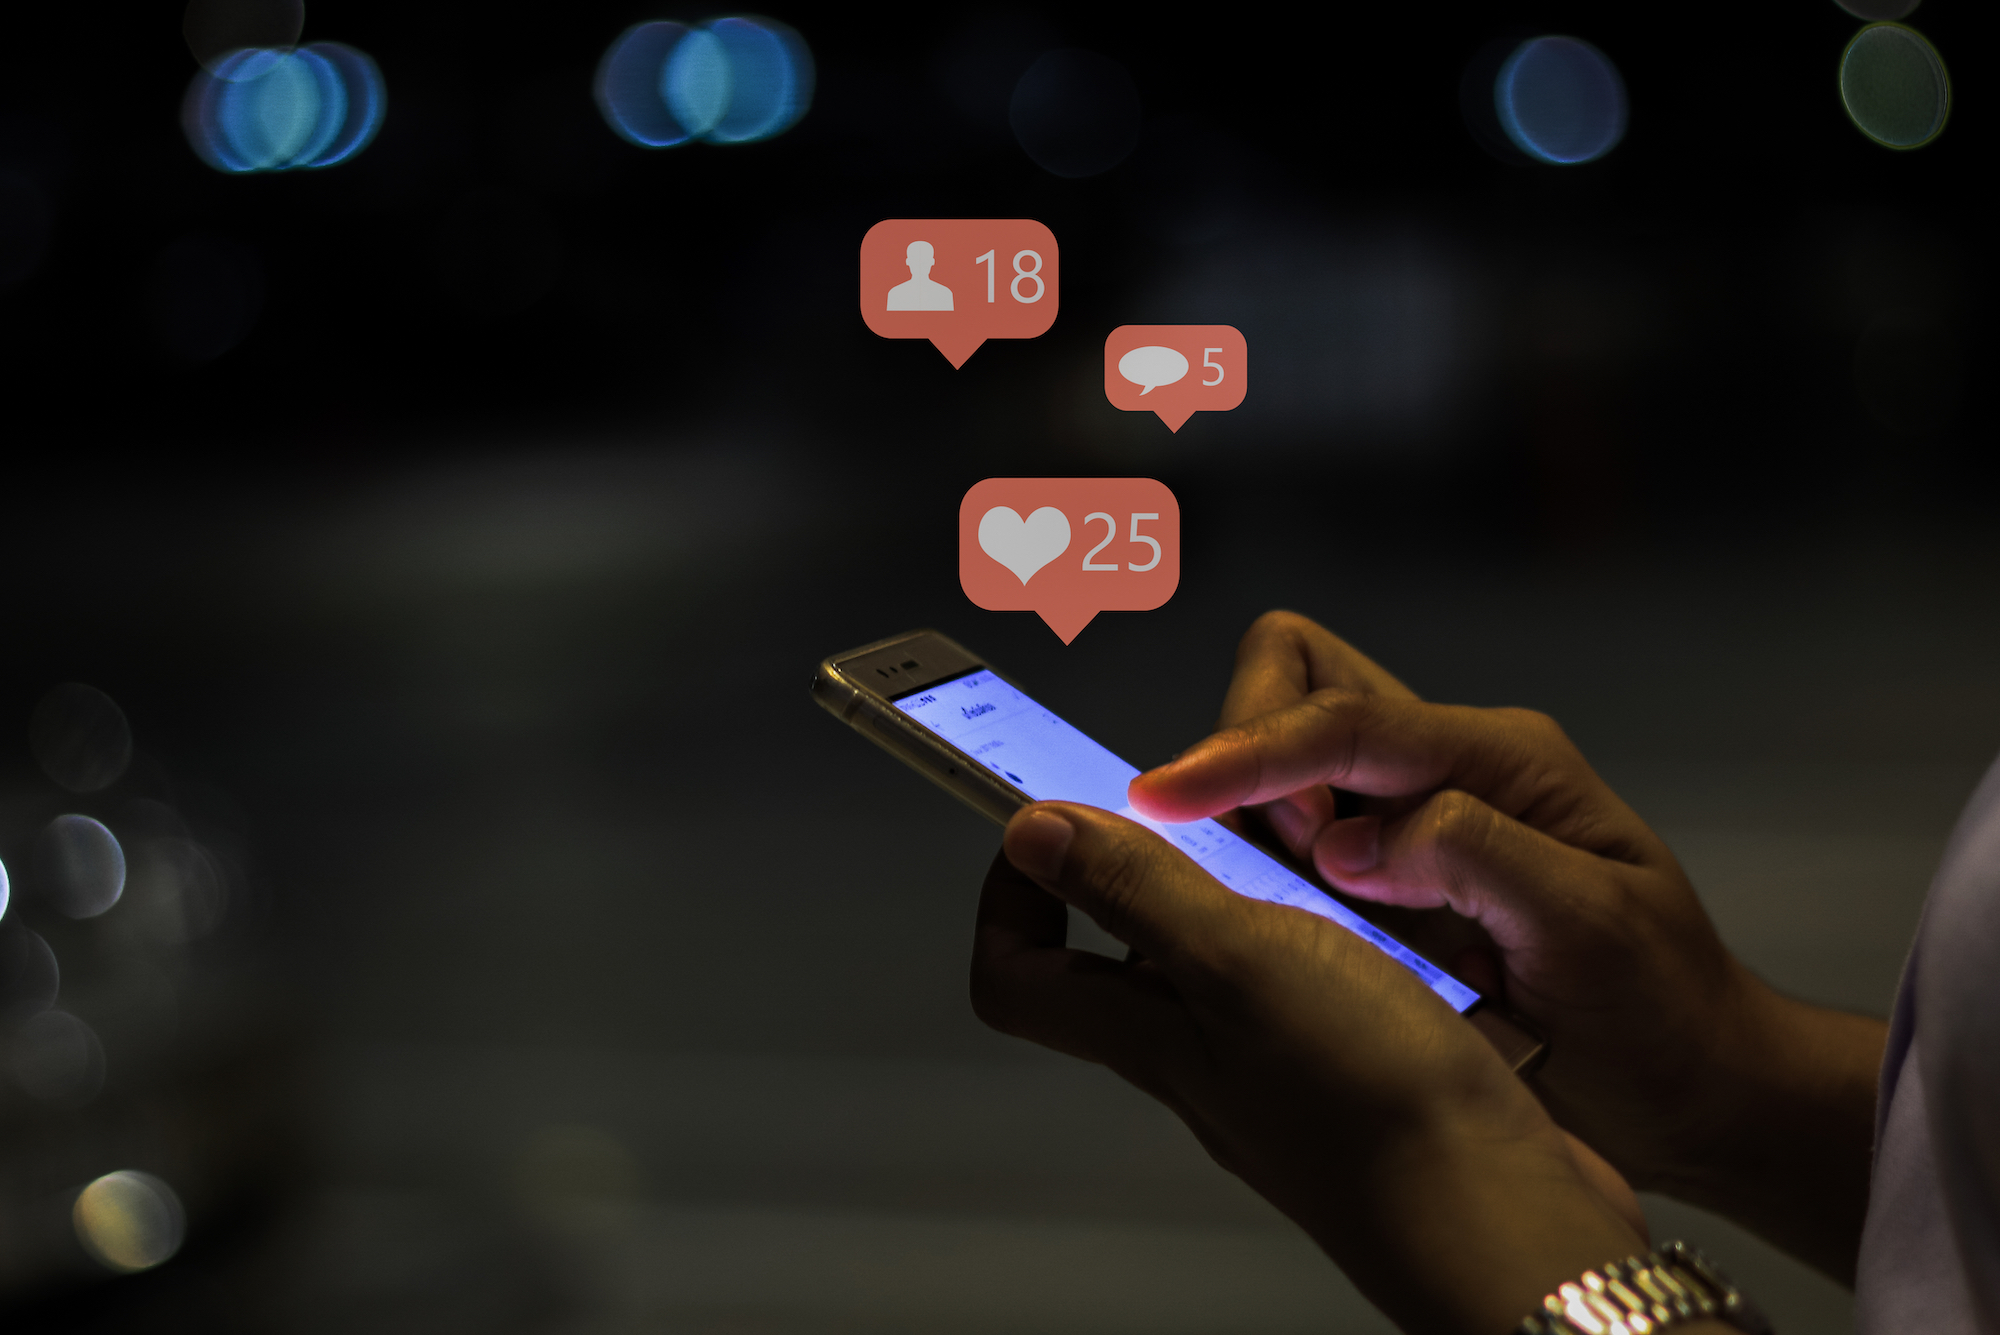 Показатели вовлеченности в социальные сети снижаются в ведущих сетях